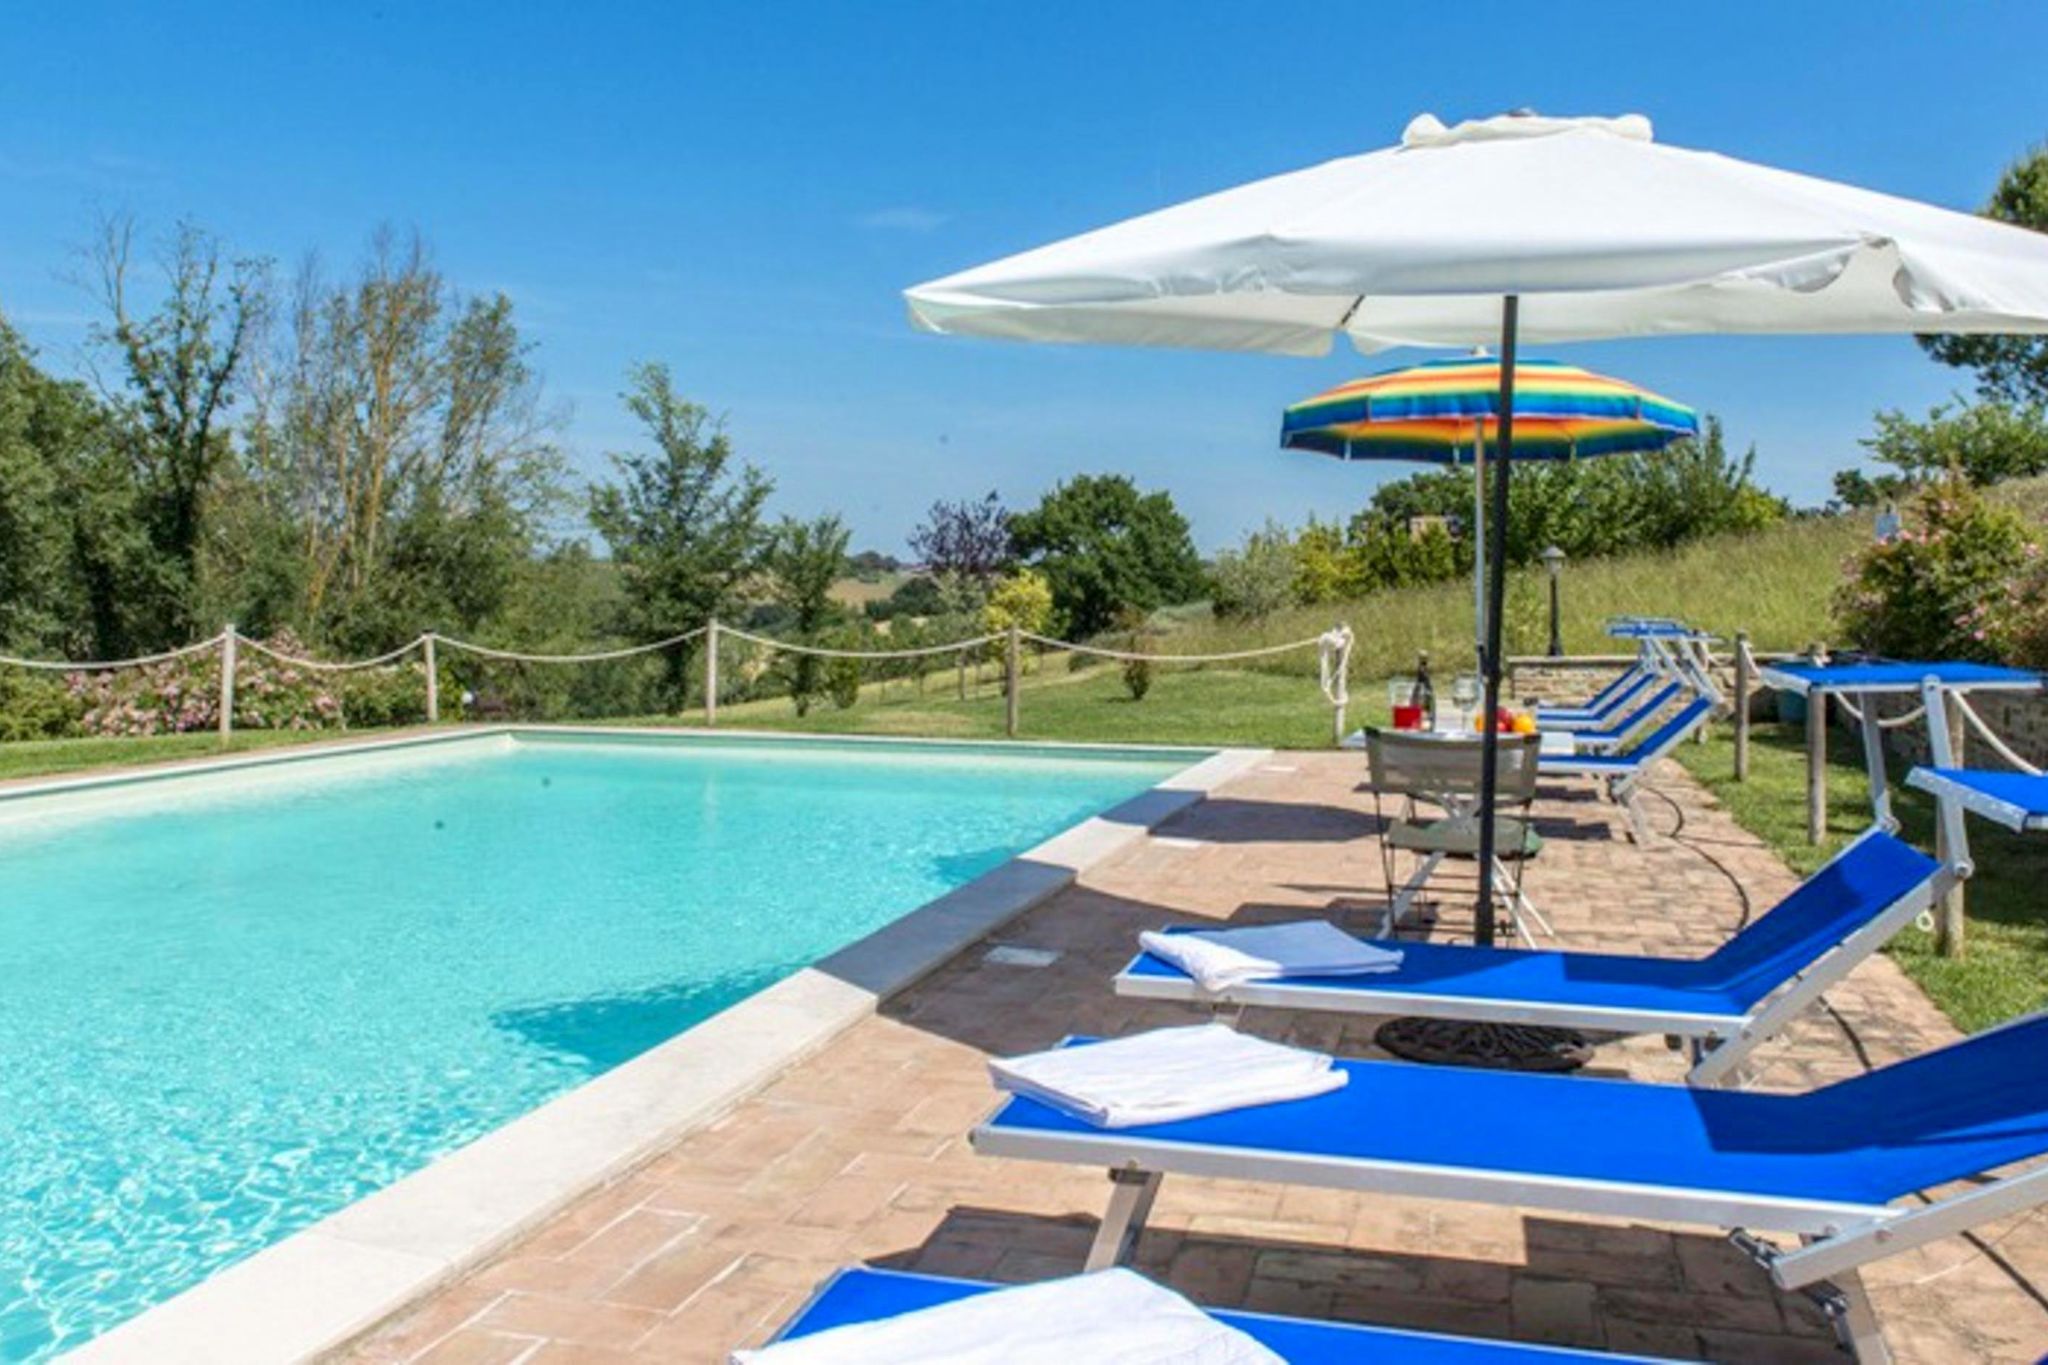 Goed onderhouden vakantiehuis in rustieke stijl met grote tuin en privézwembad